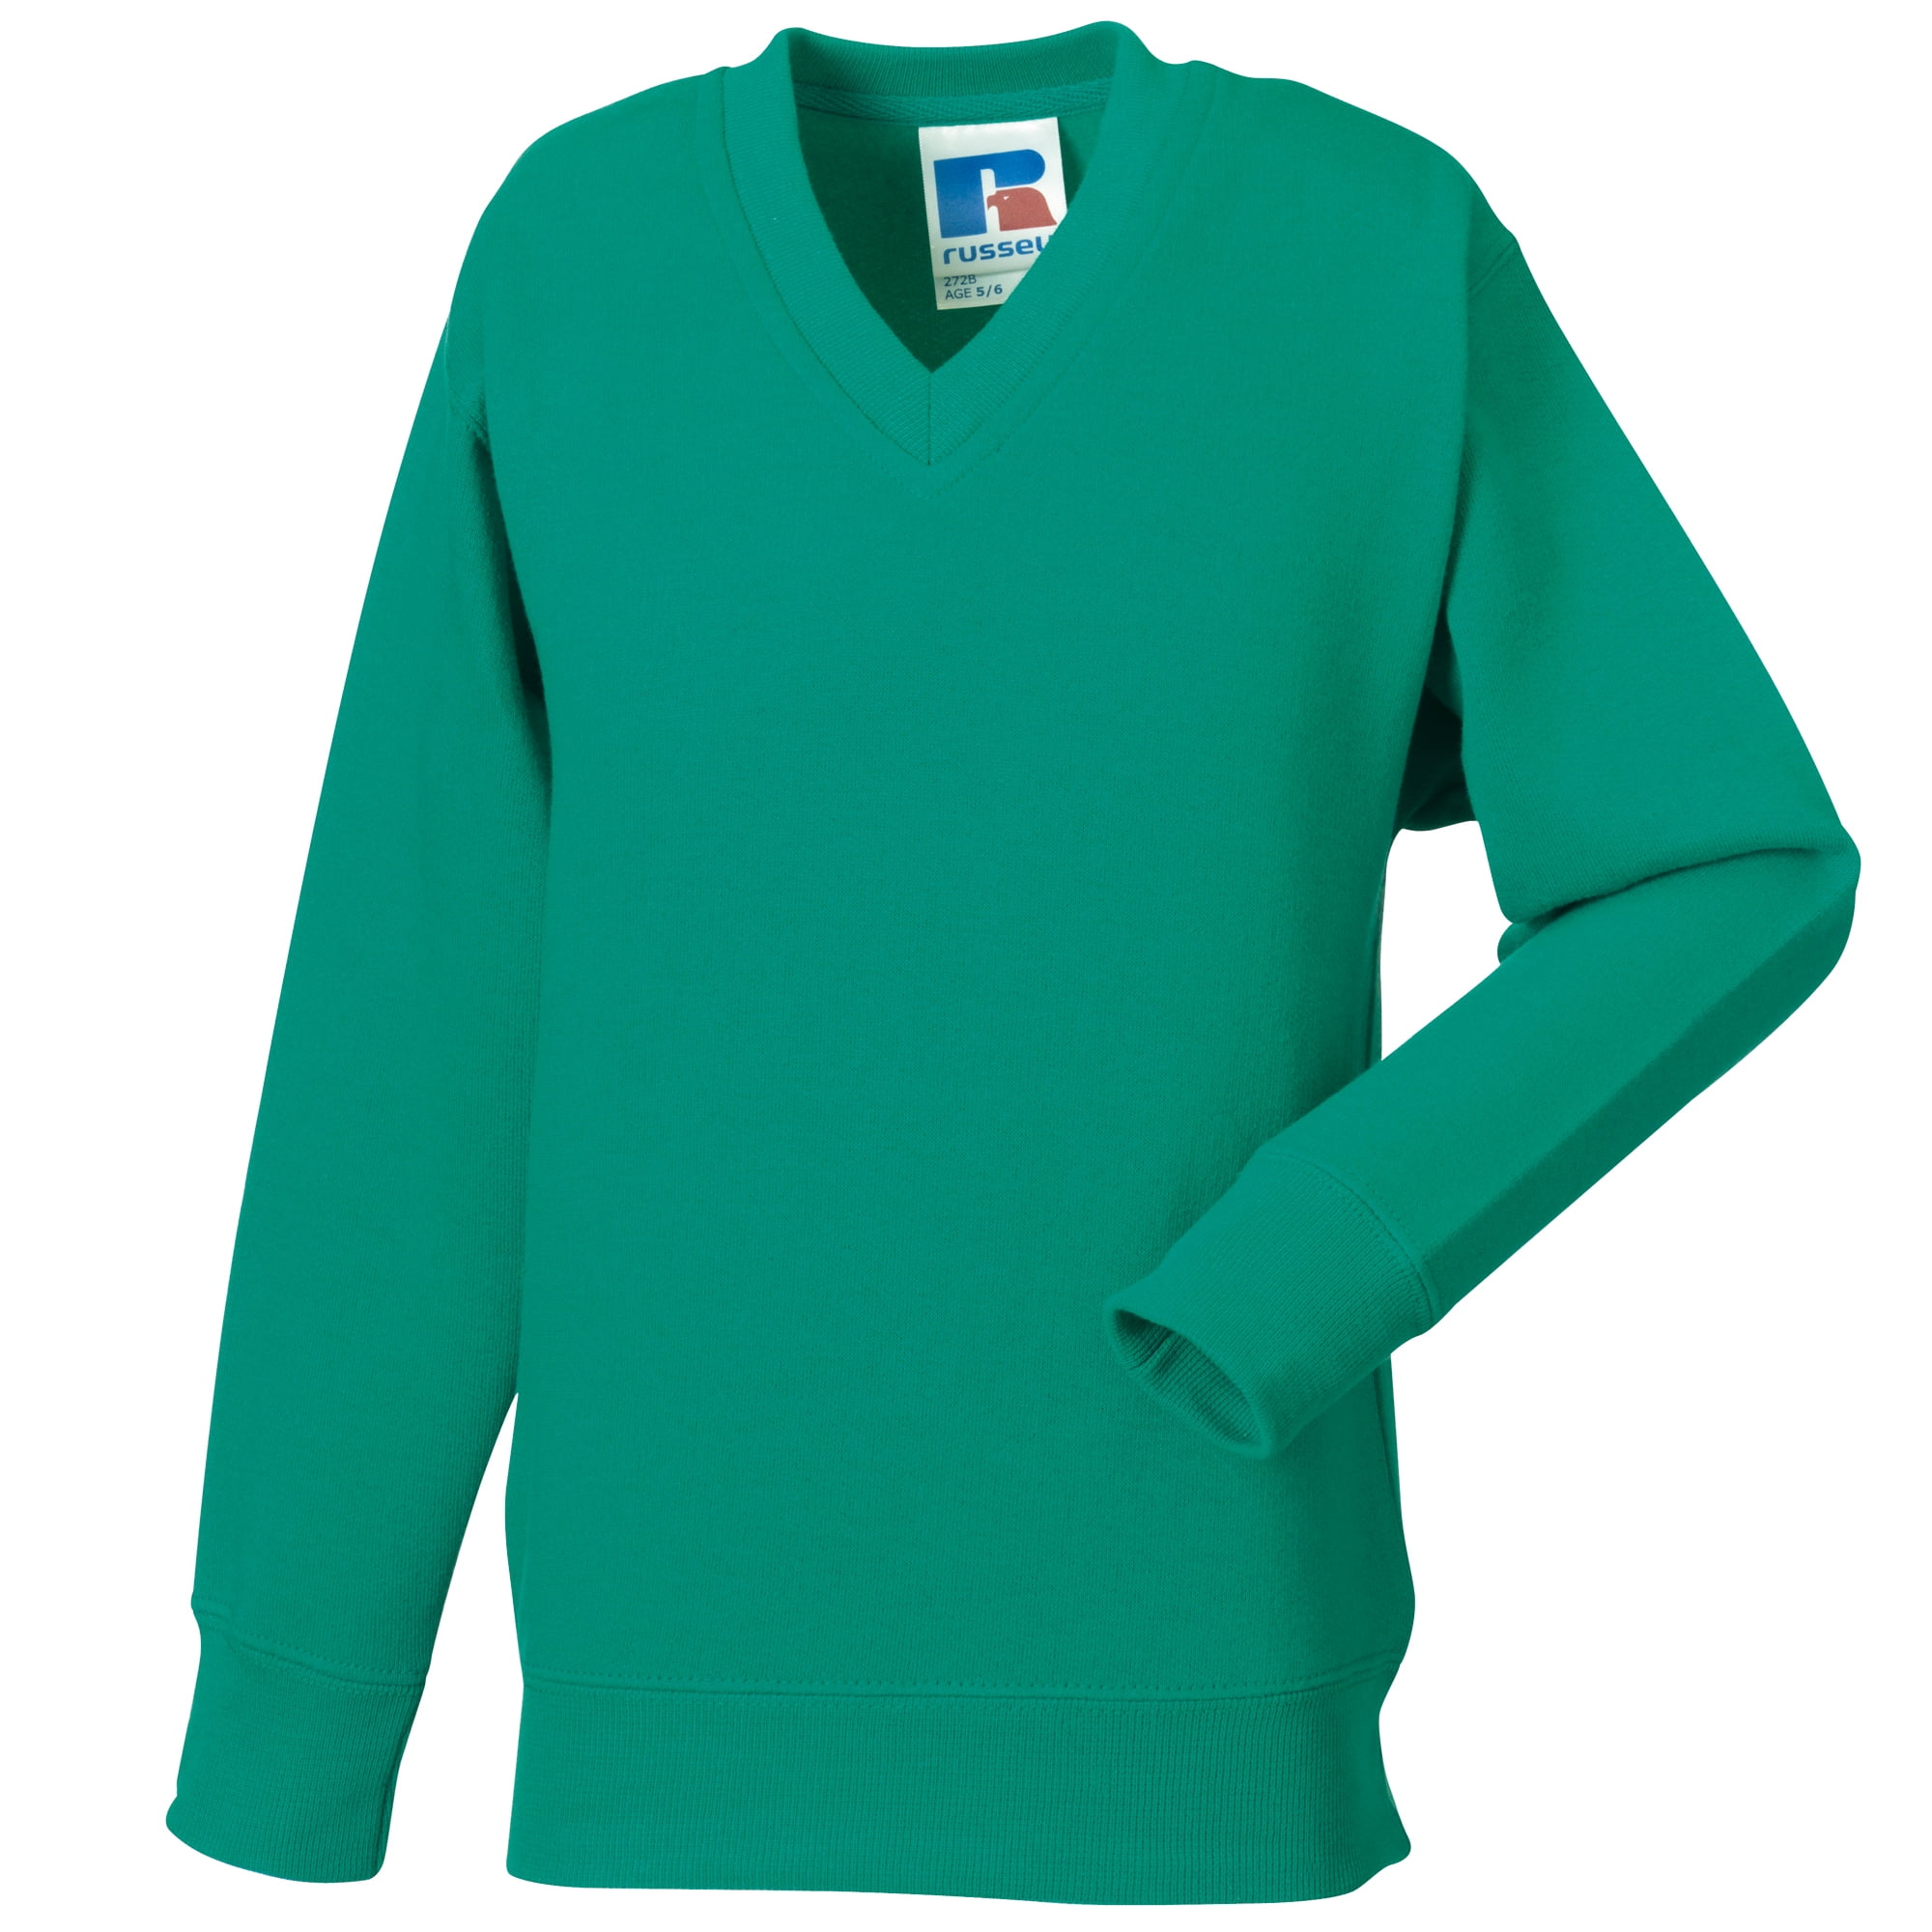 School Uniform Sweatshirt V Neck Jumper Pullover Boy Girl Russell Jerzees 272B 